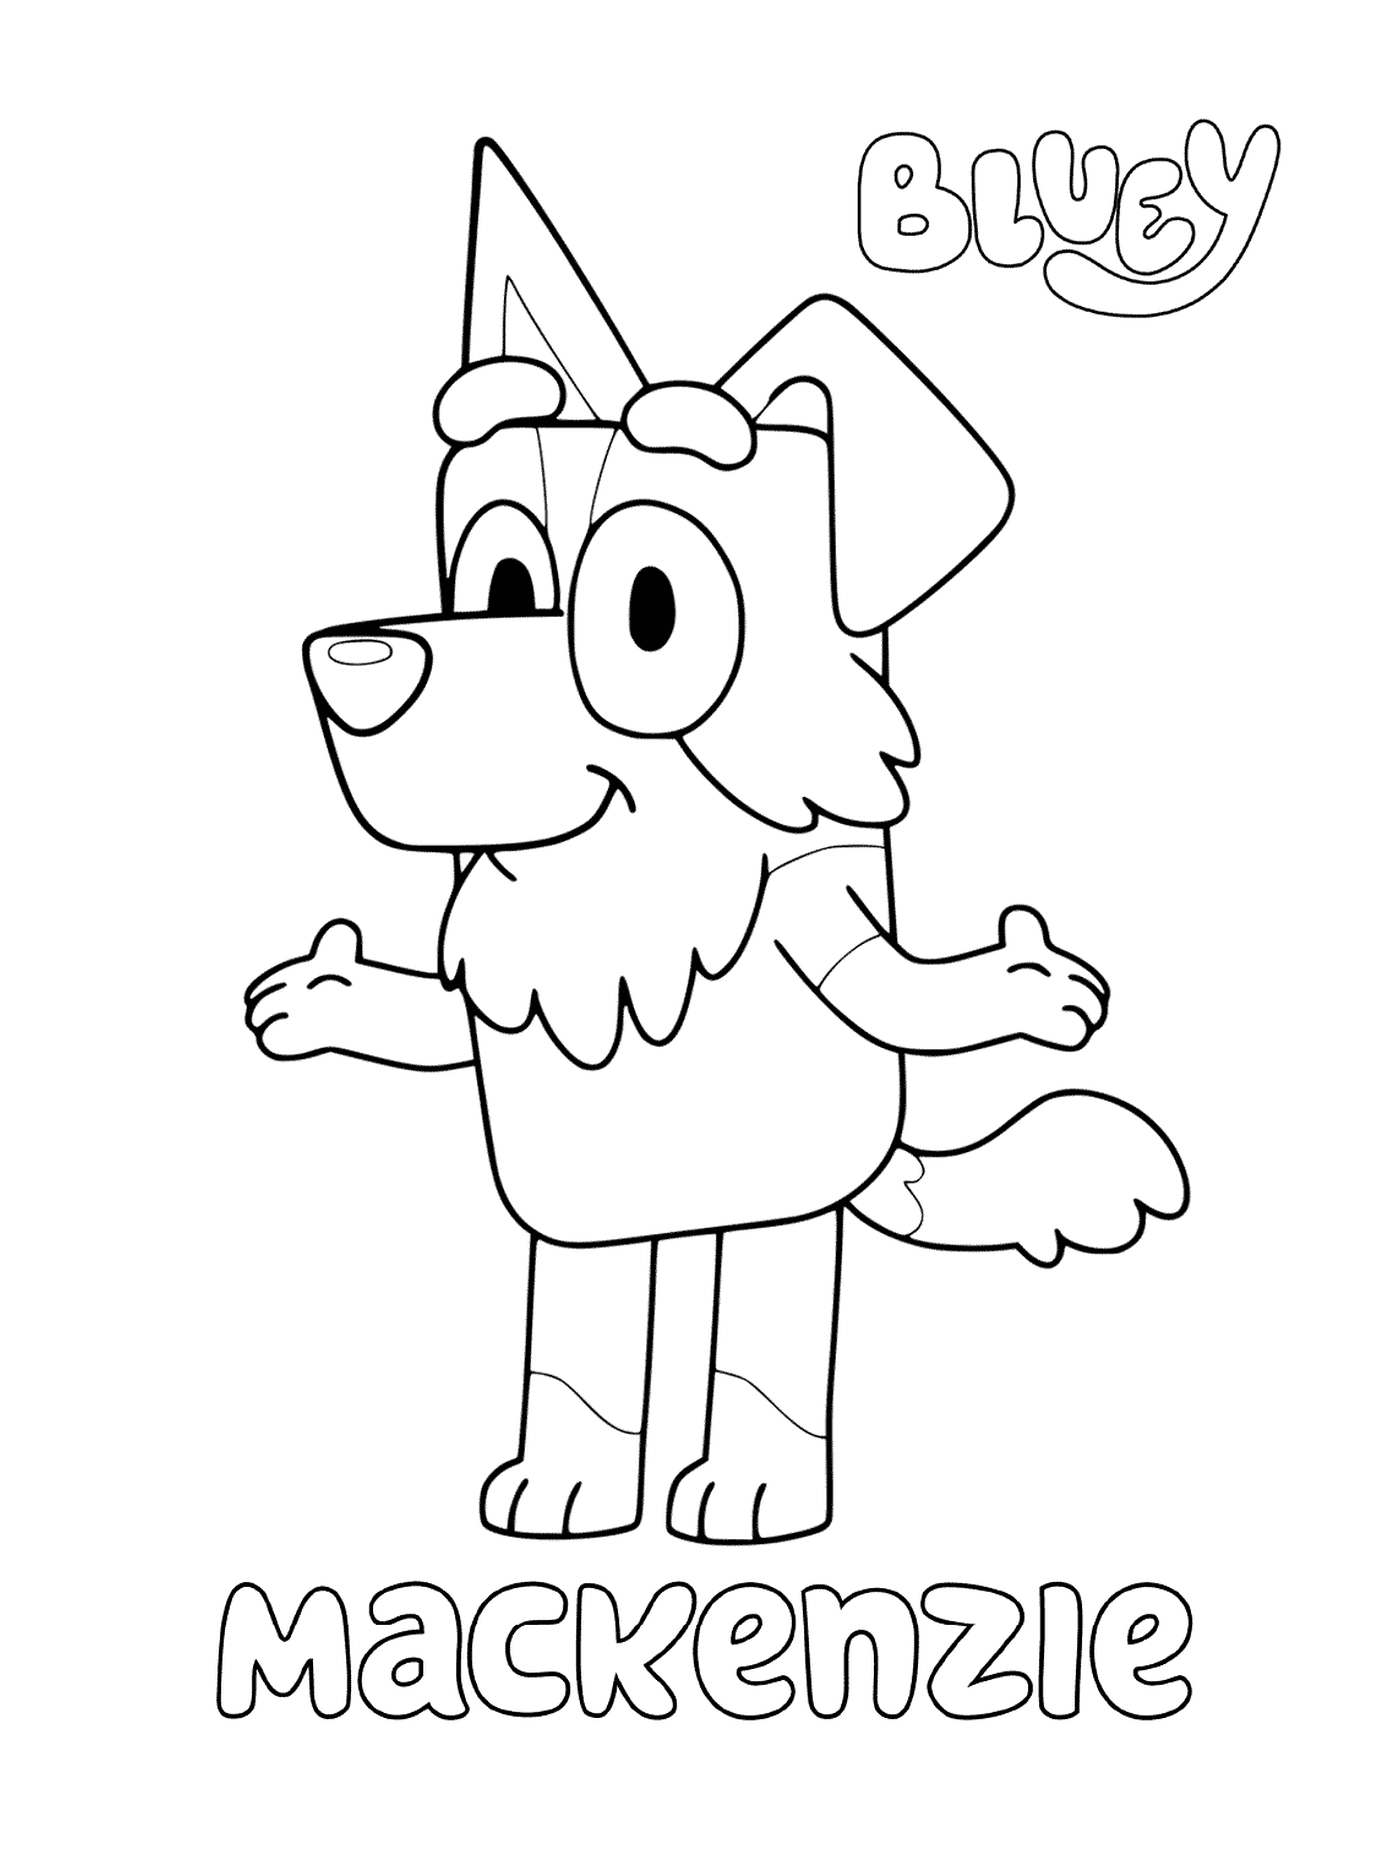  A cartoon dog named Mackenzie 